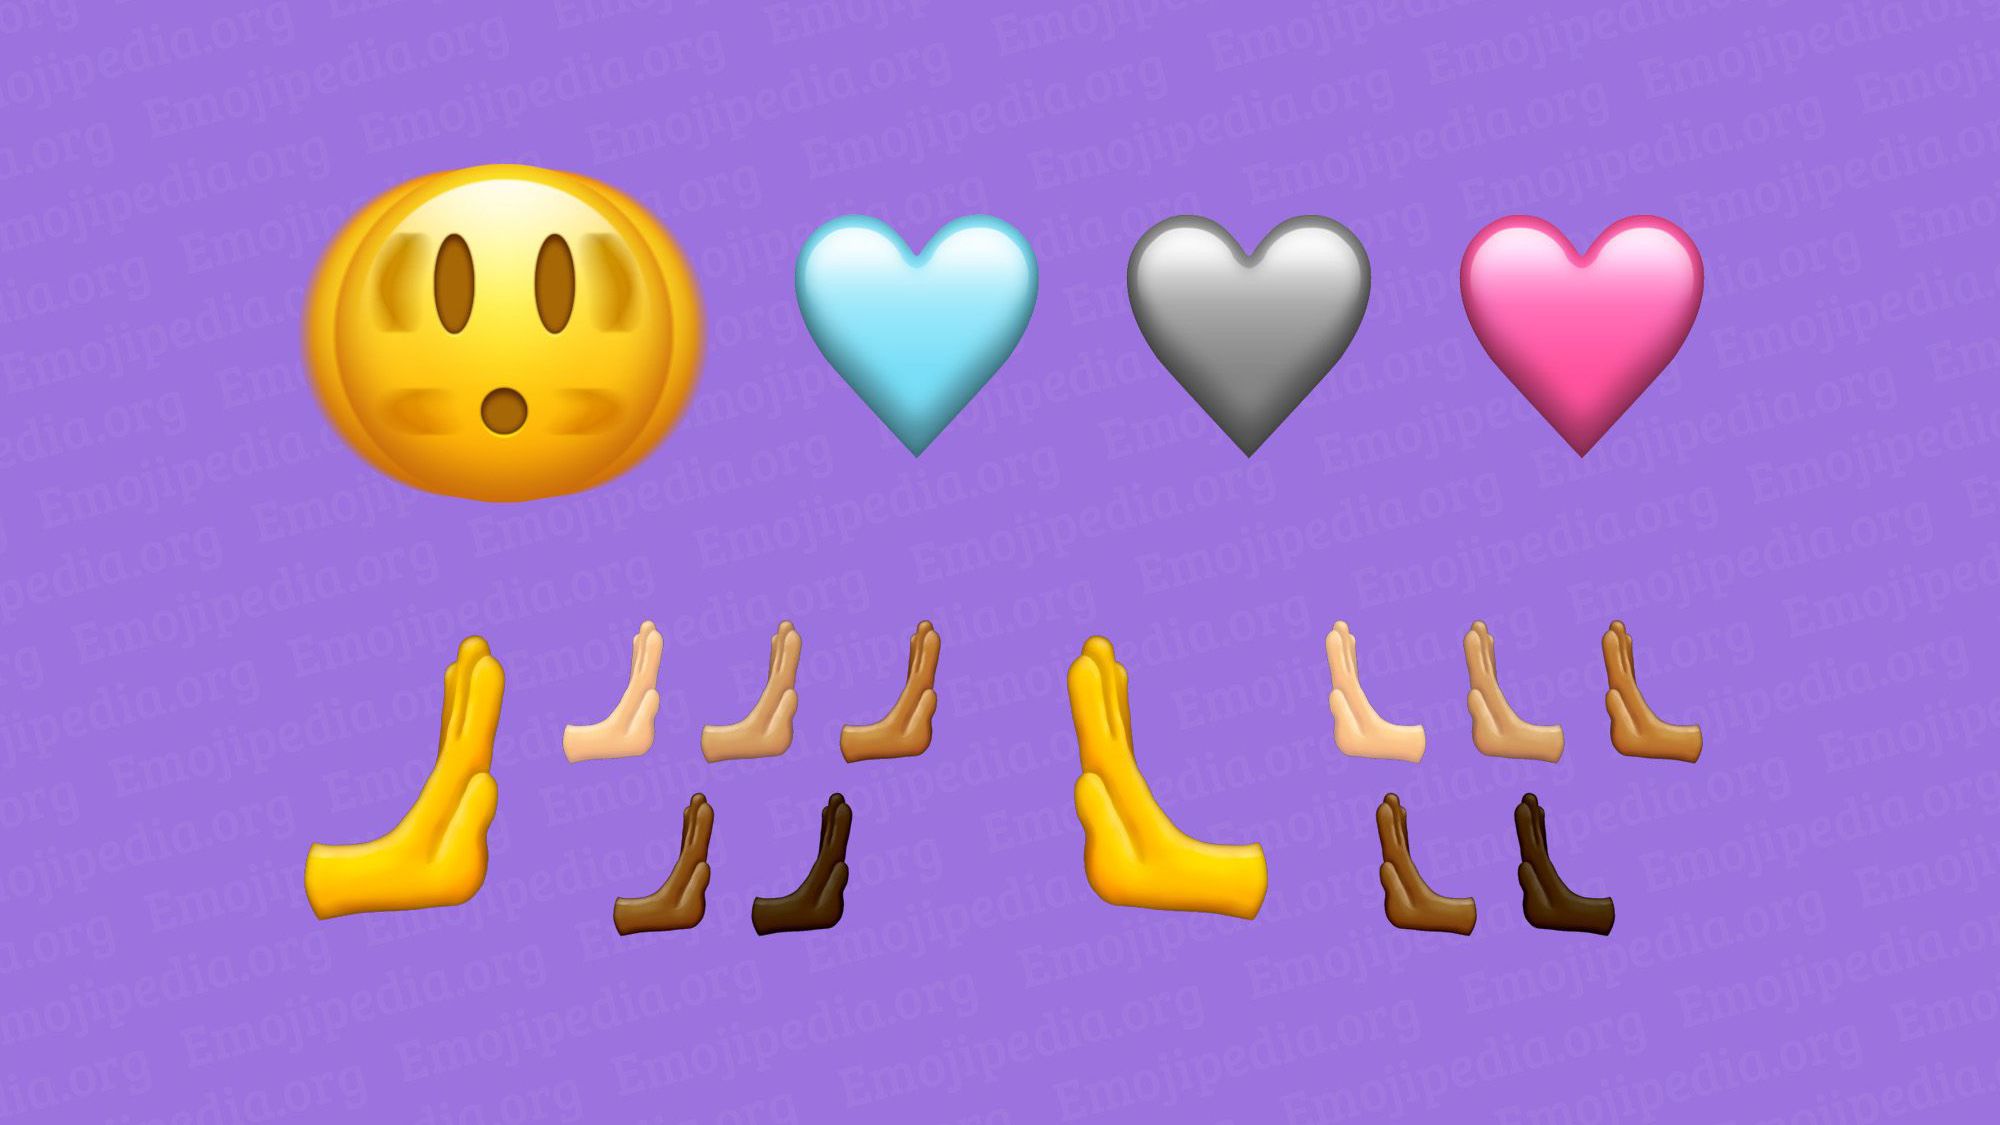 Cinco curiosidades sobre a evolução dos emojis no Android e iPhone